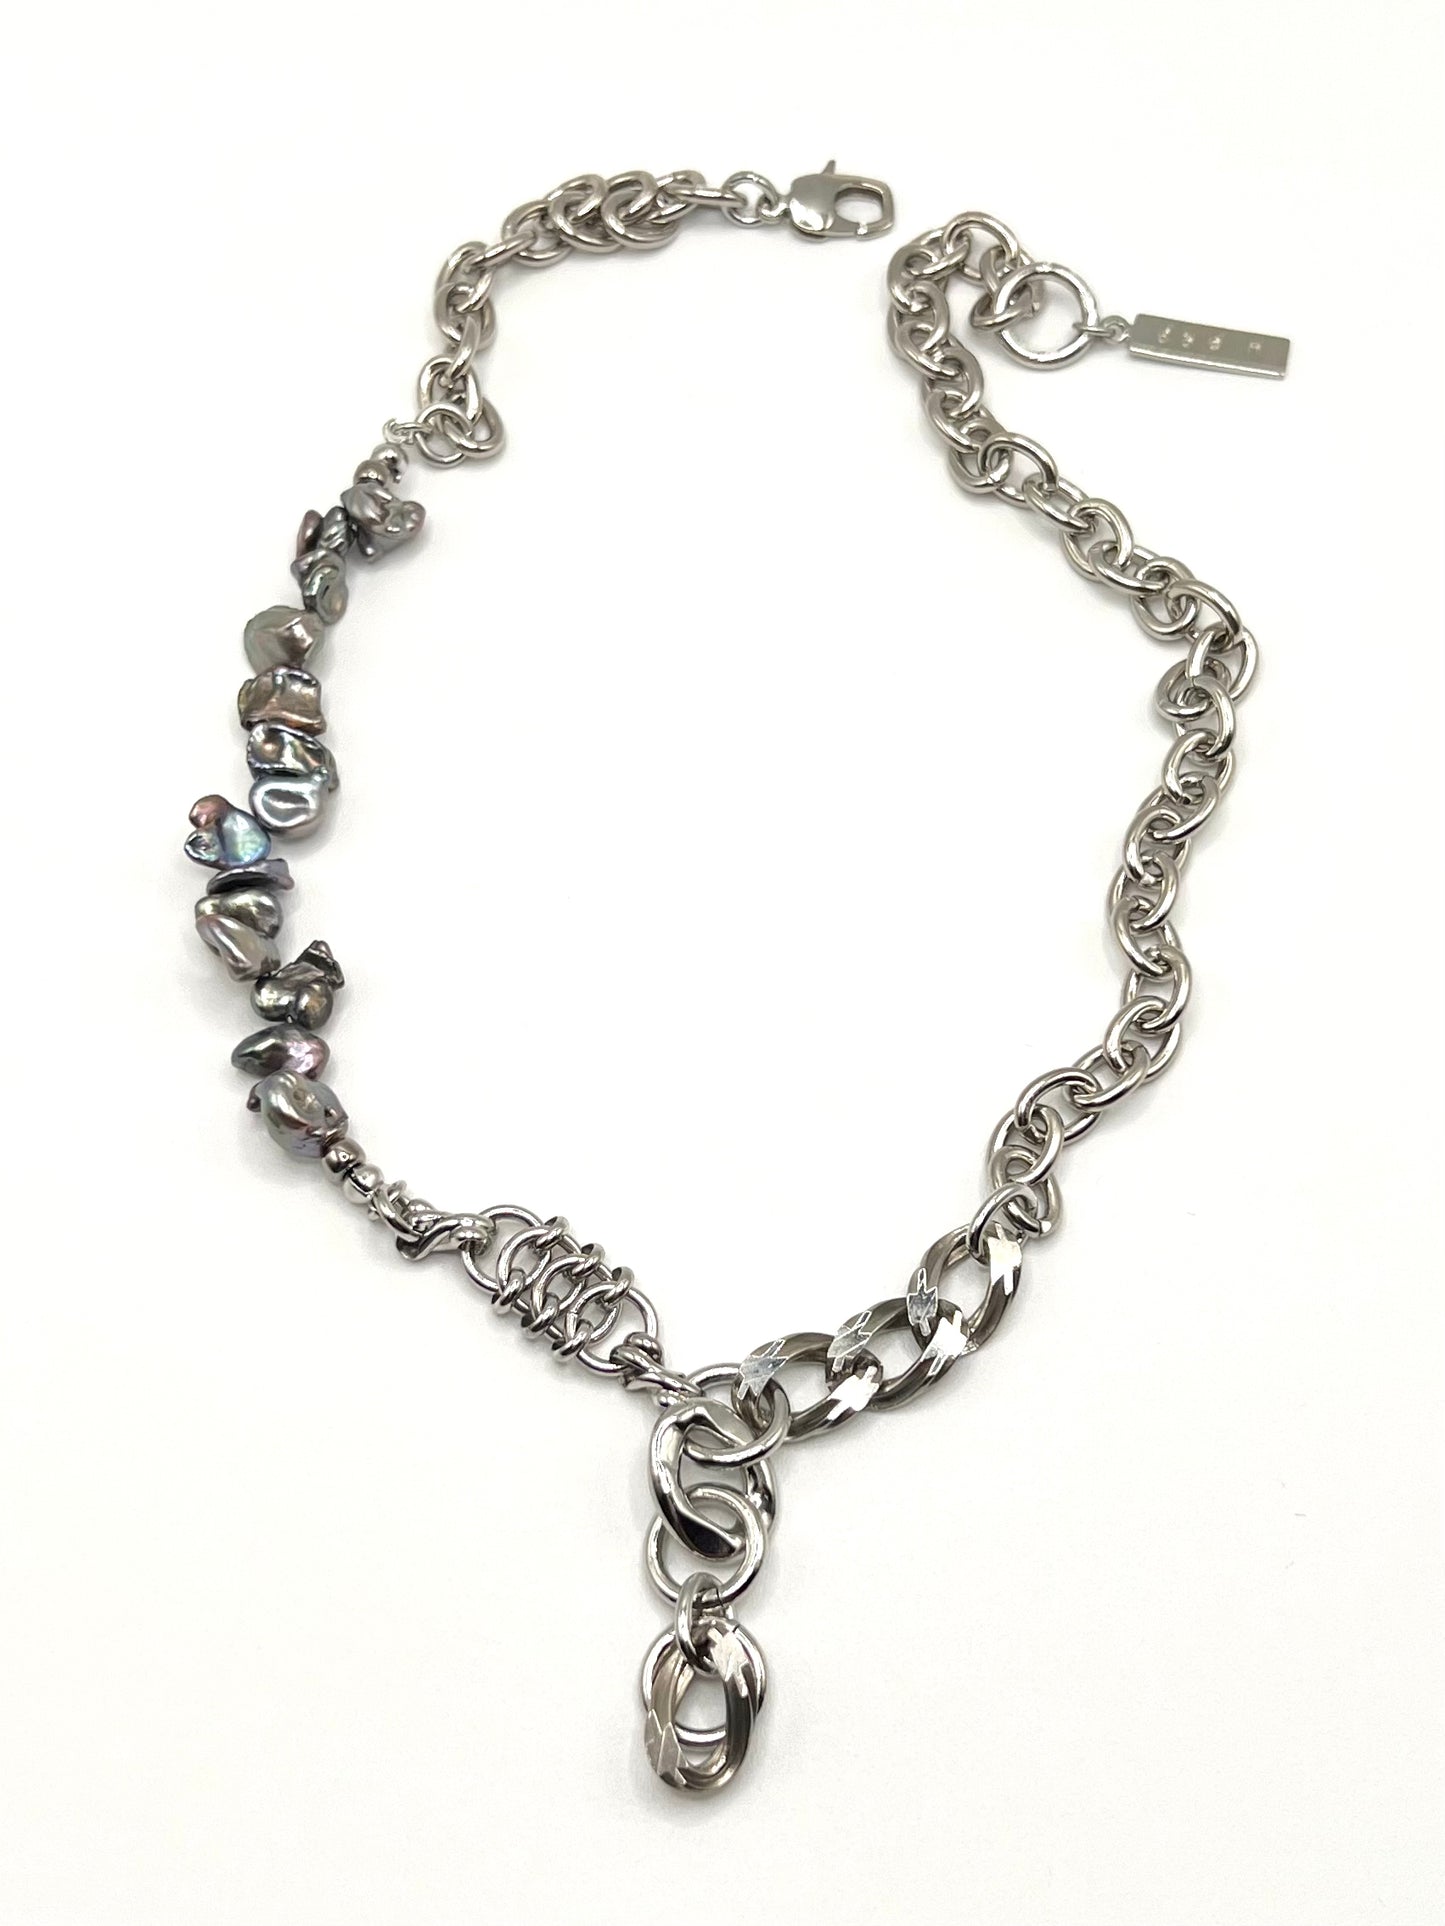 Chain combination necklace - E